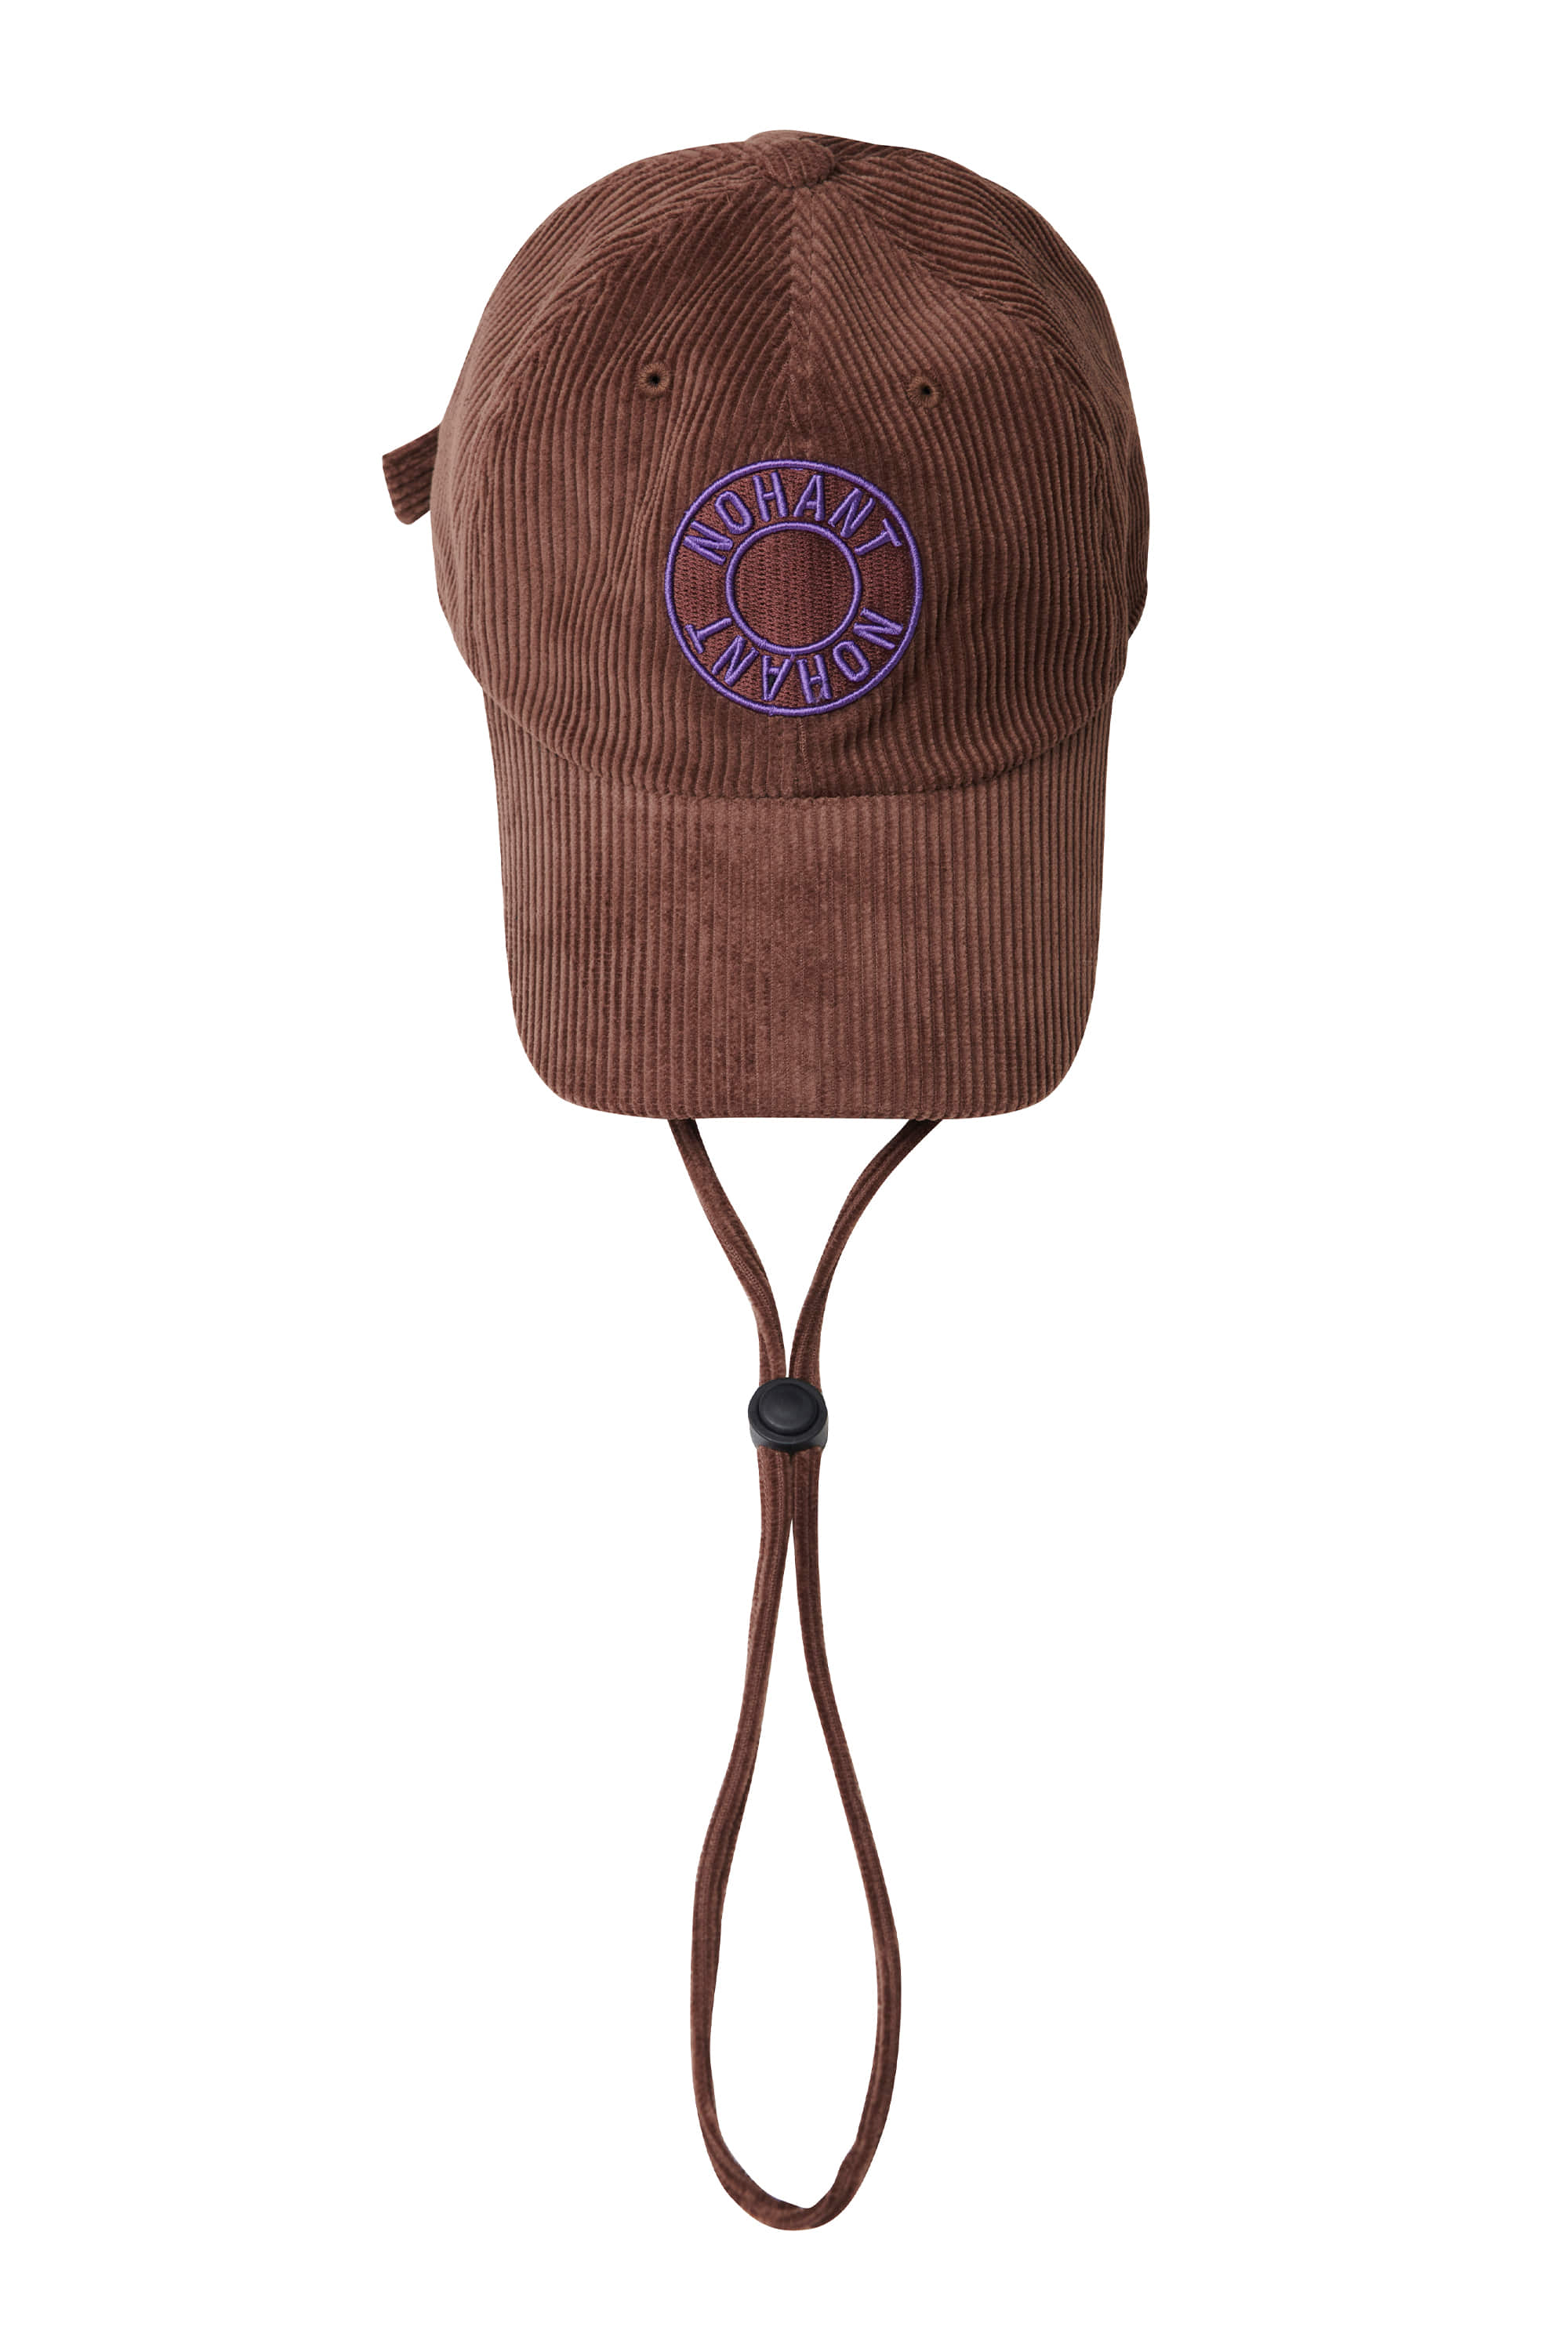 LOGO PATCH CHIN STRAP CORDUROY BALL CAP BROWN